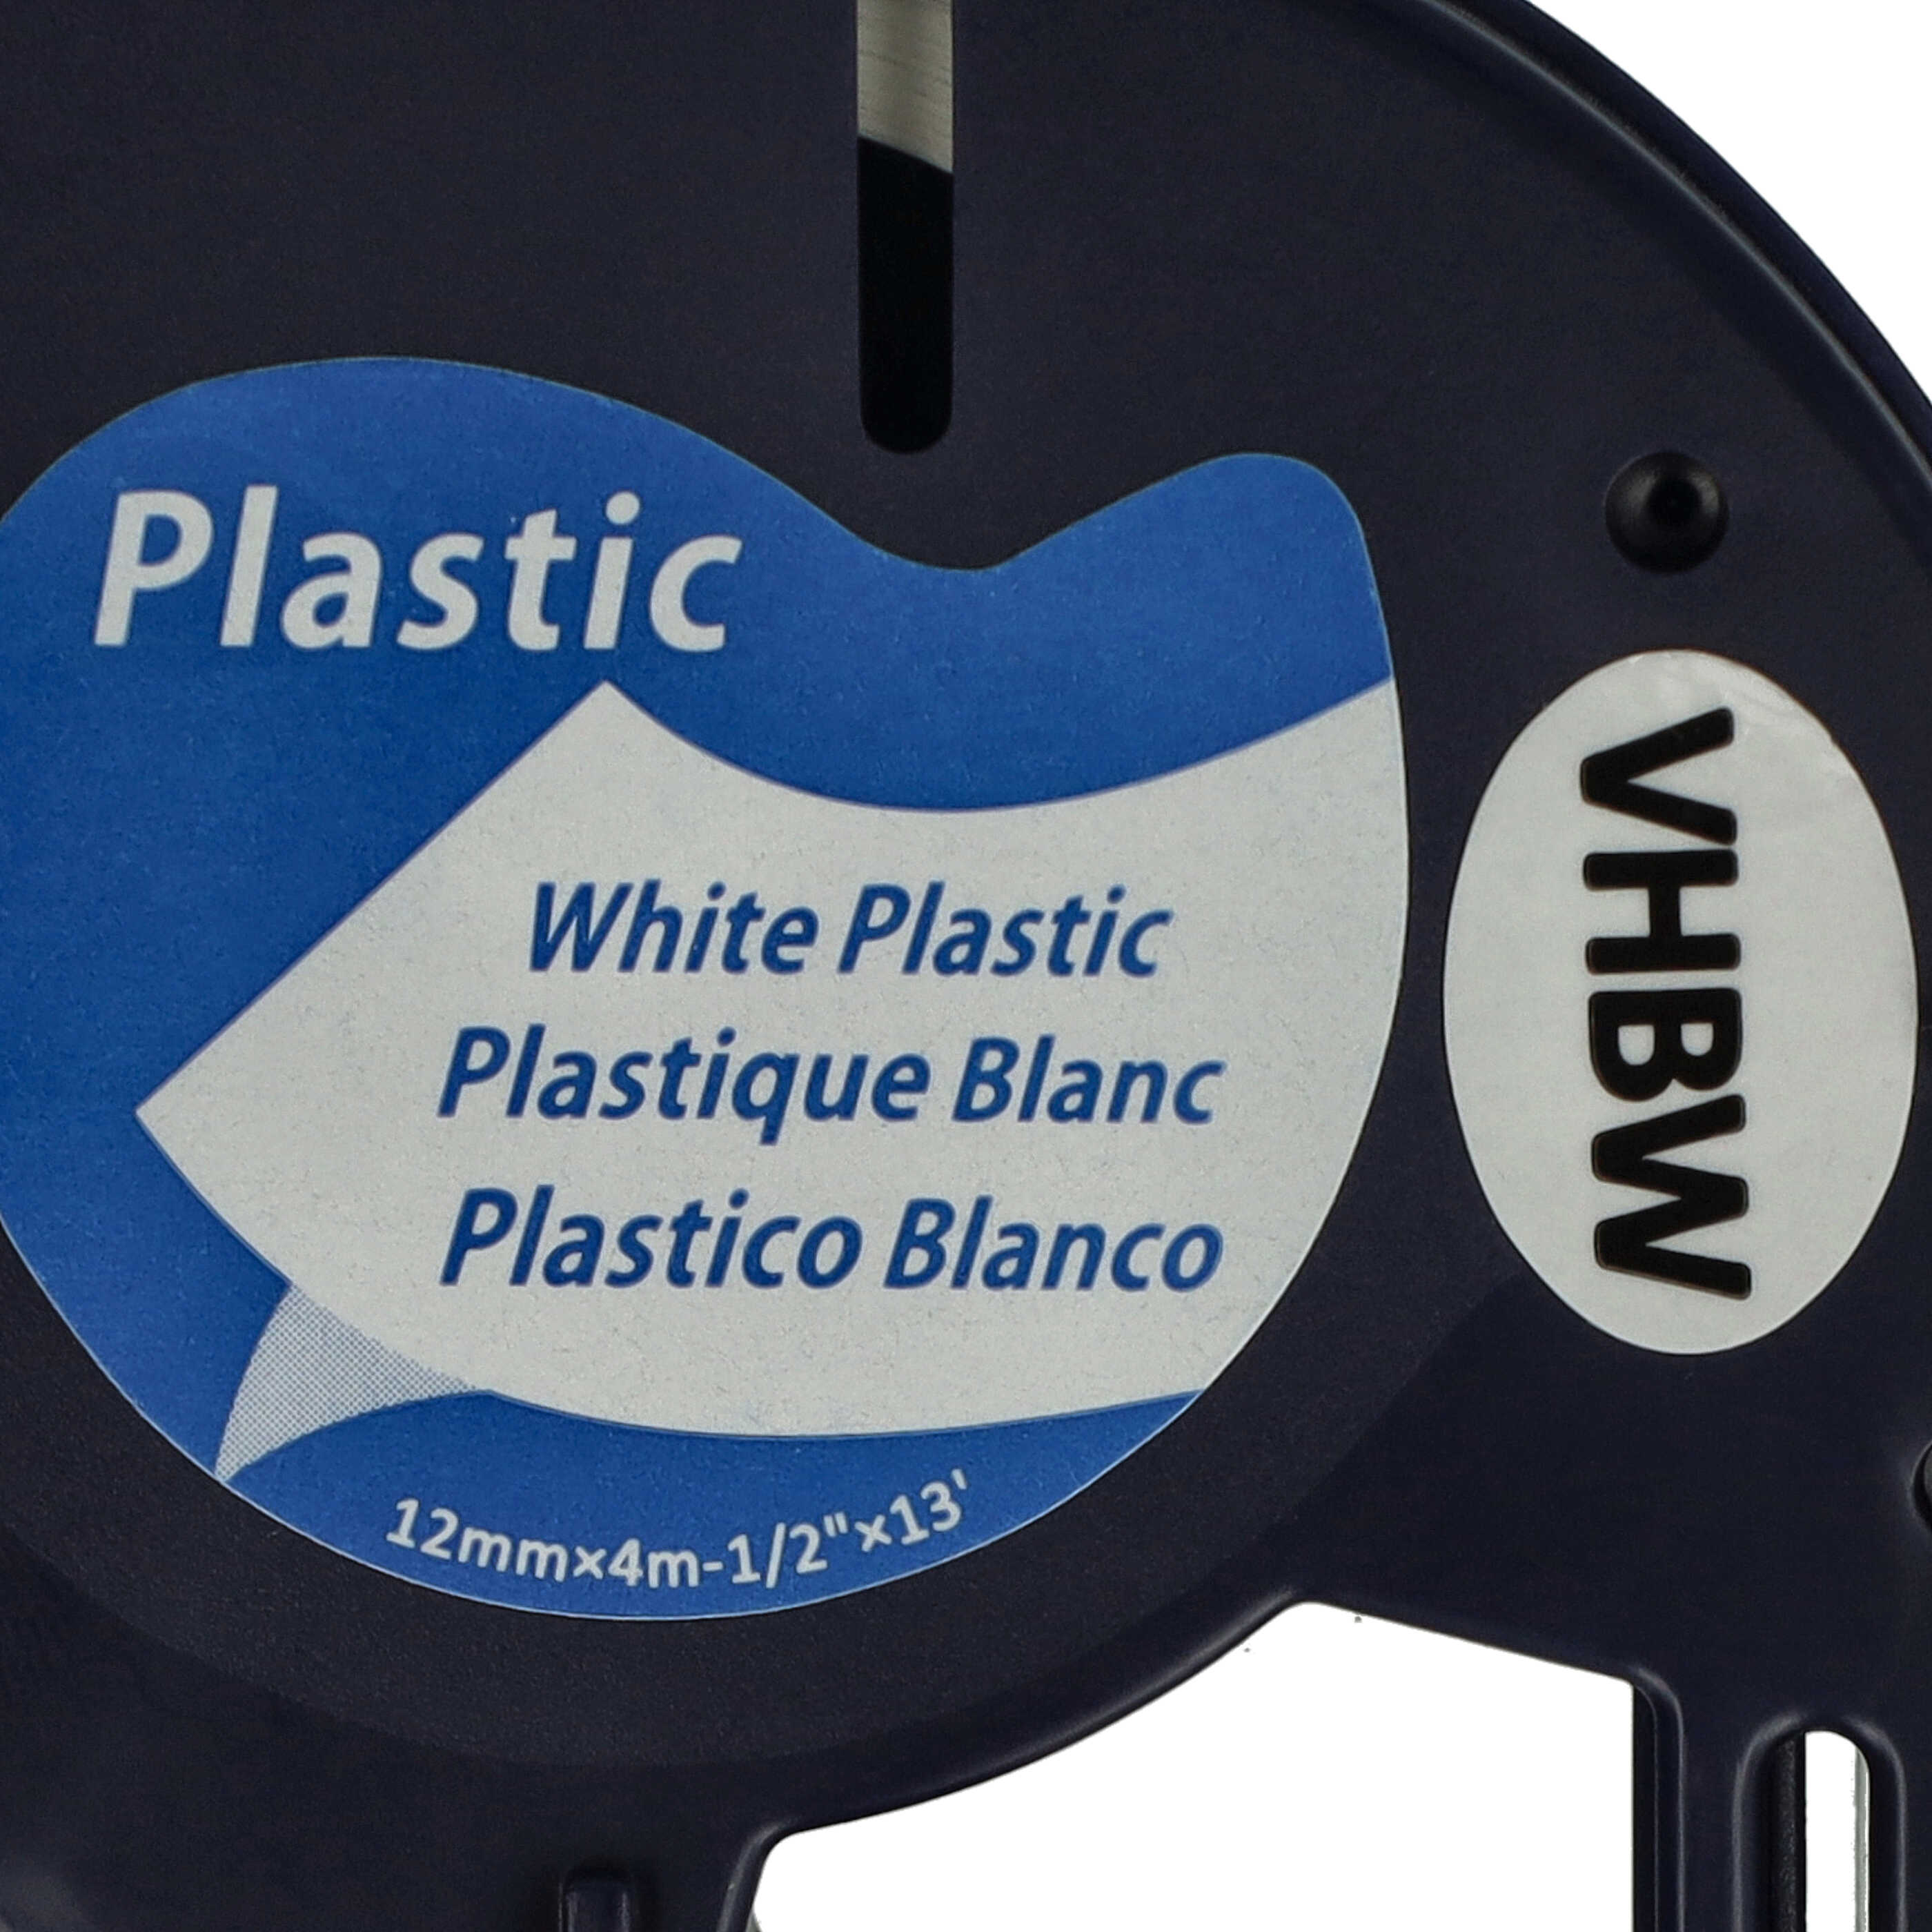 Casete cinta escritura plástico reemplaza Dymo S0721660, 91221 Negro su Blanco